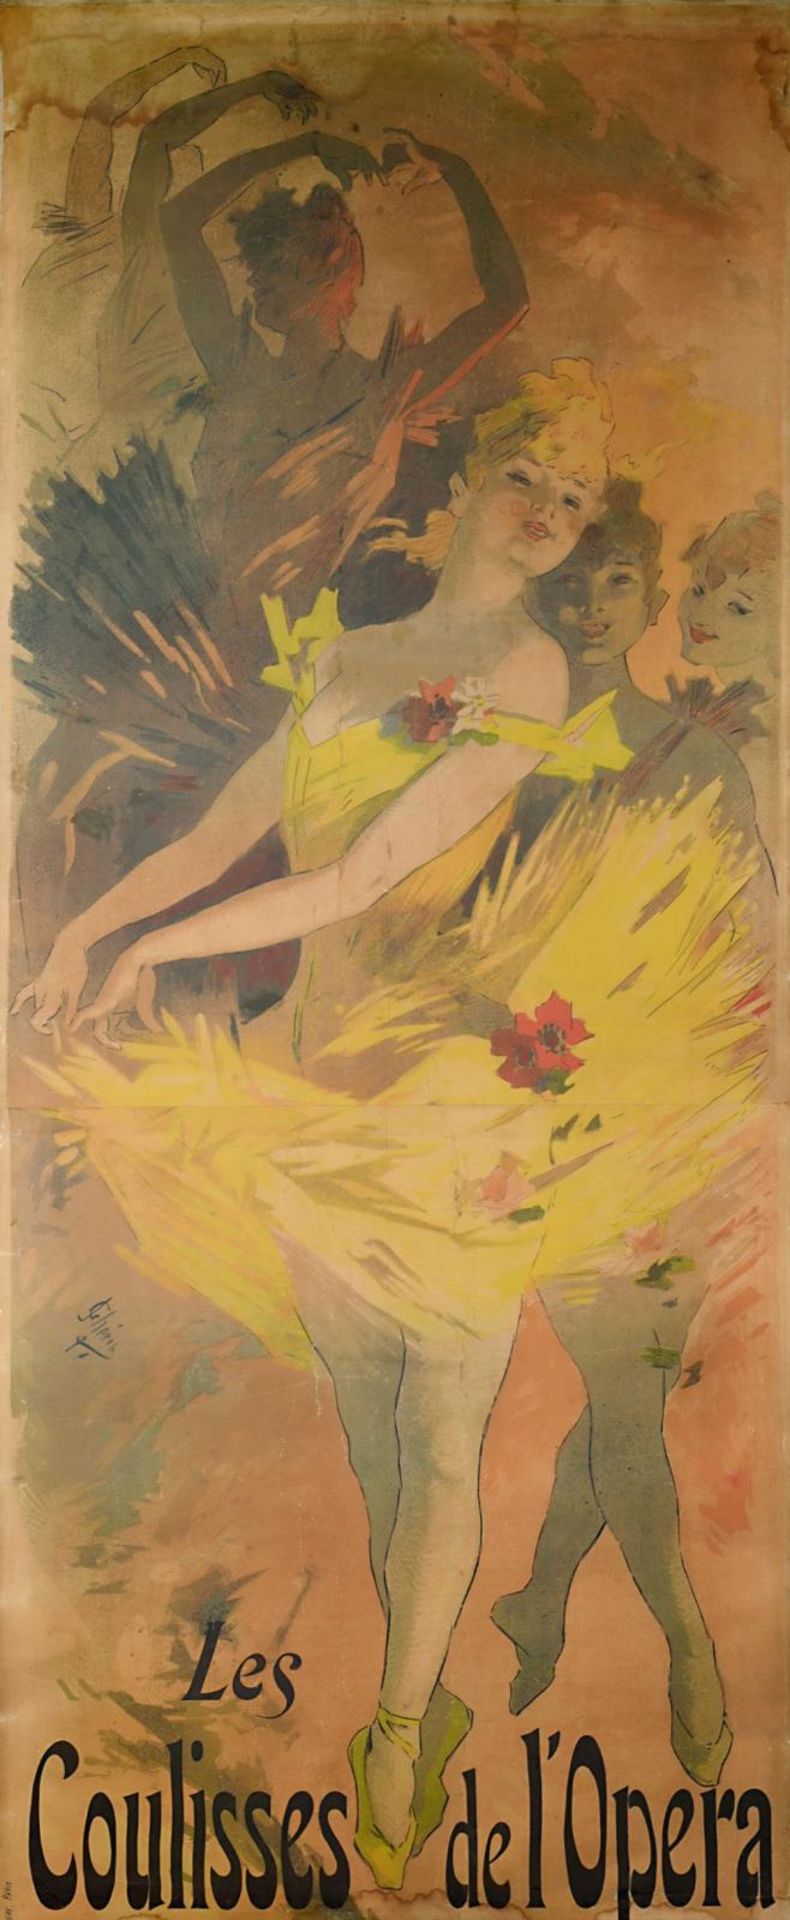 CHÉRET, JULES. Les Coulisses de l'Opera au Musée Grévin. Farblithographie auf Papier auf Gewebe.